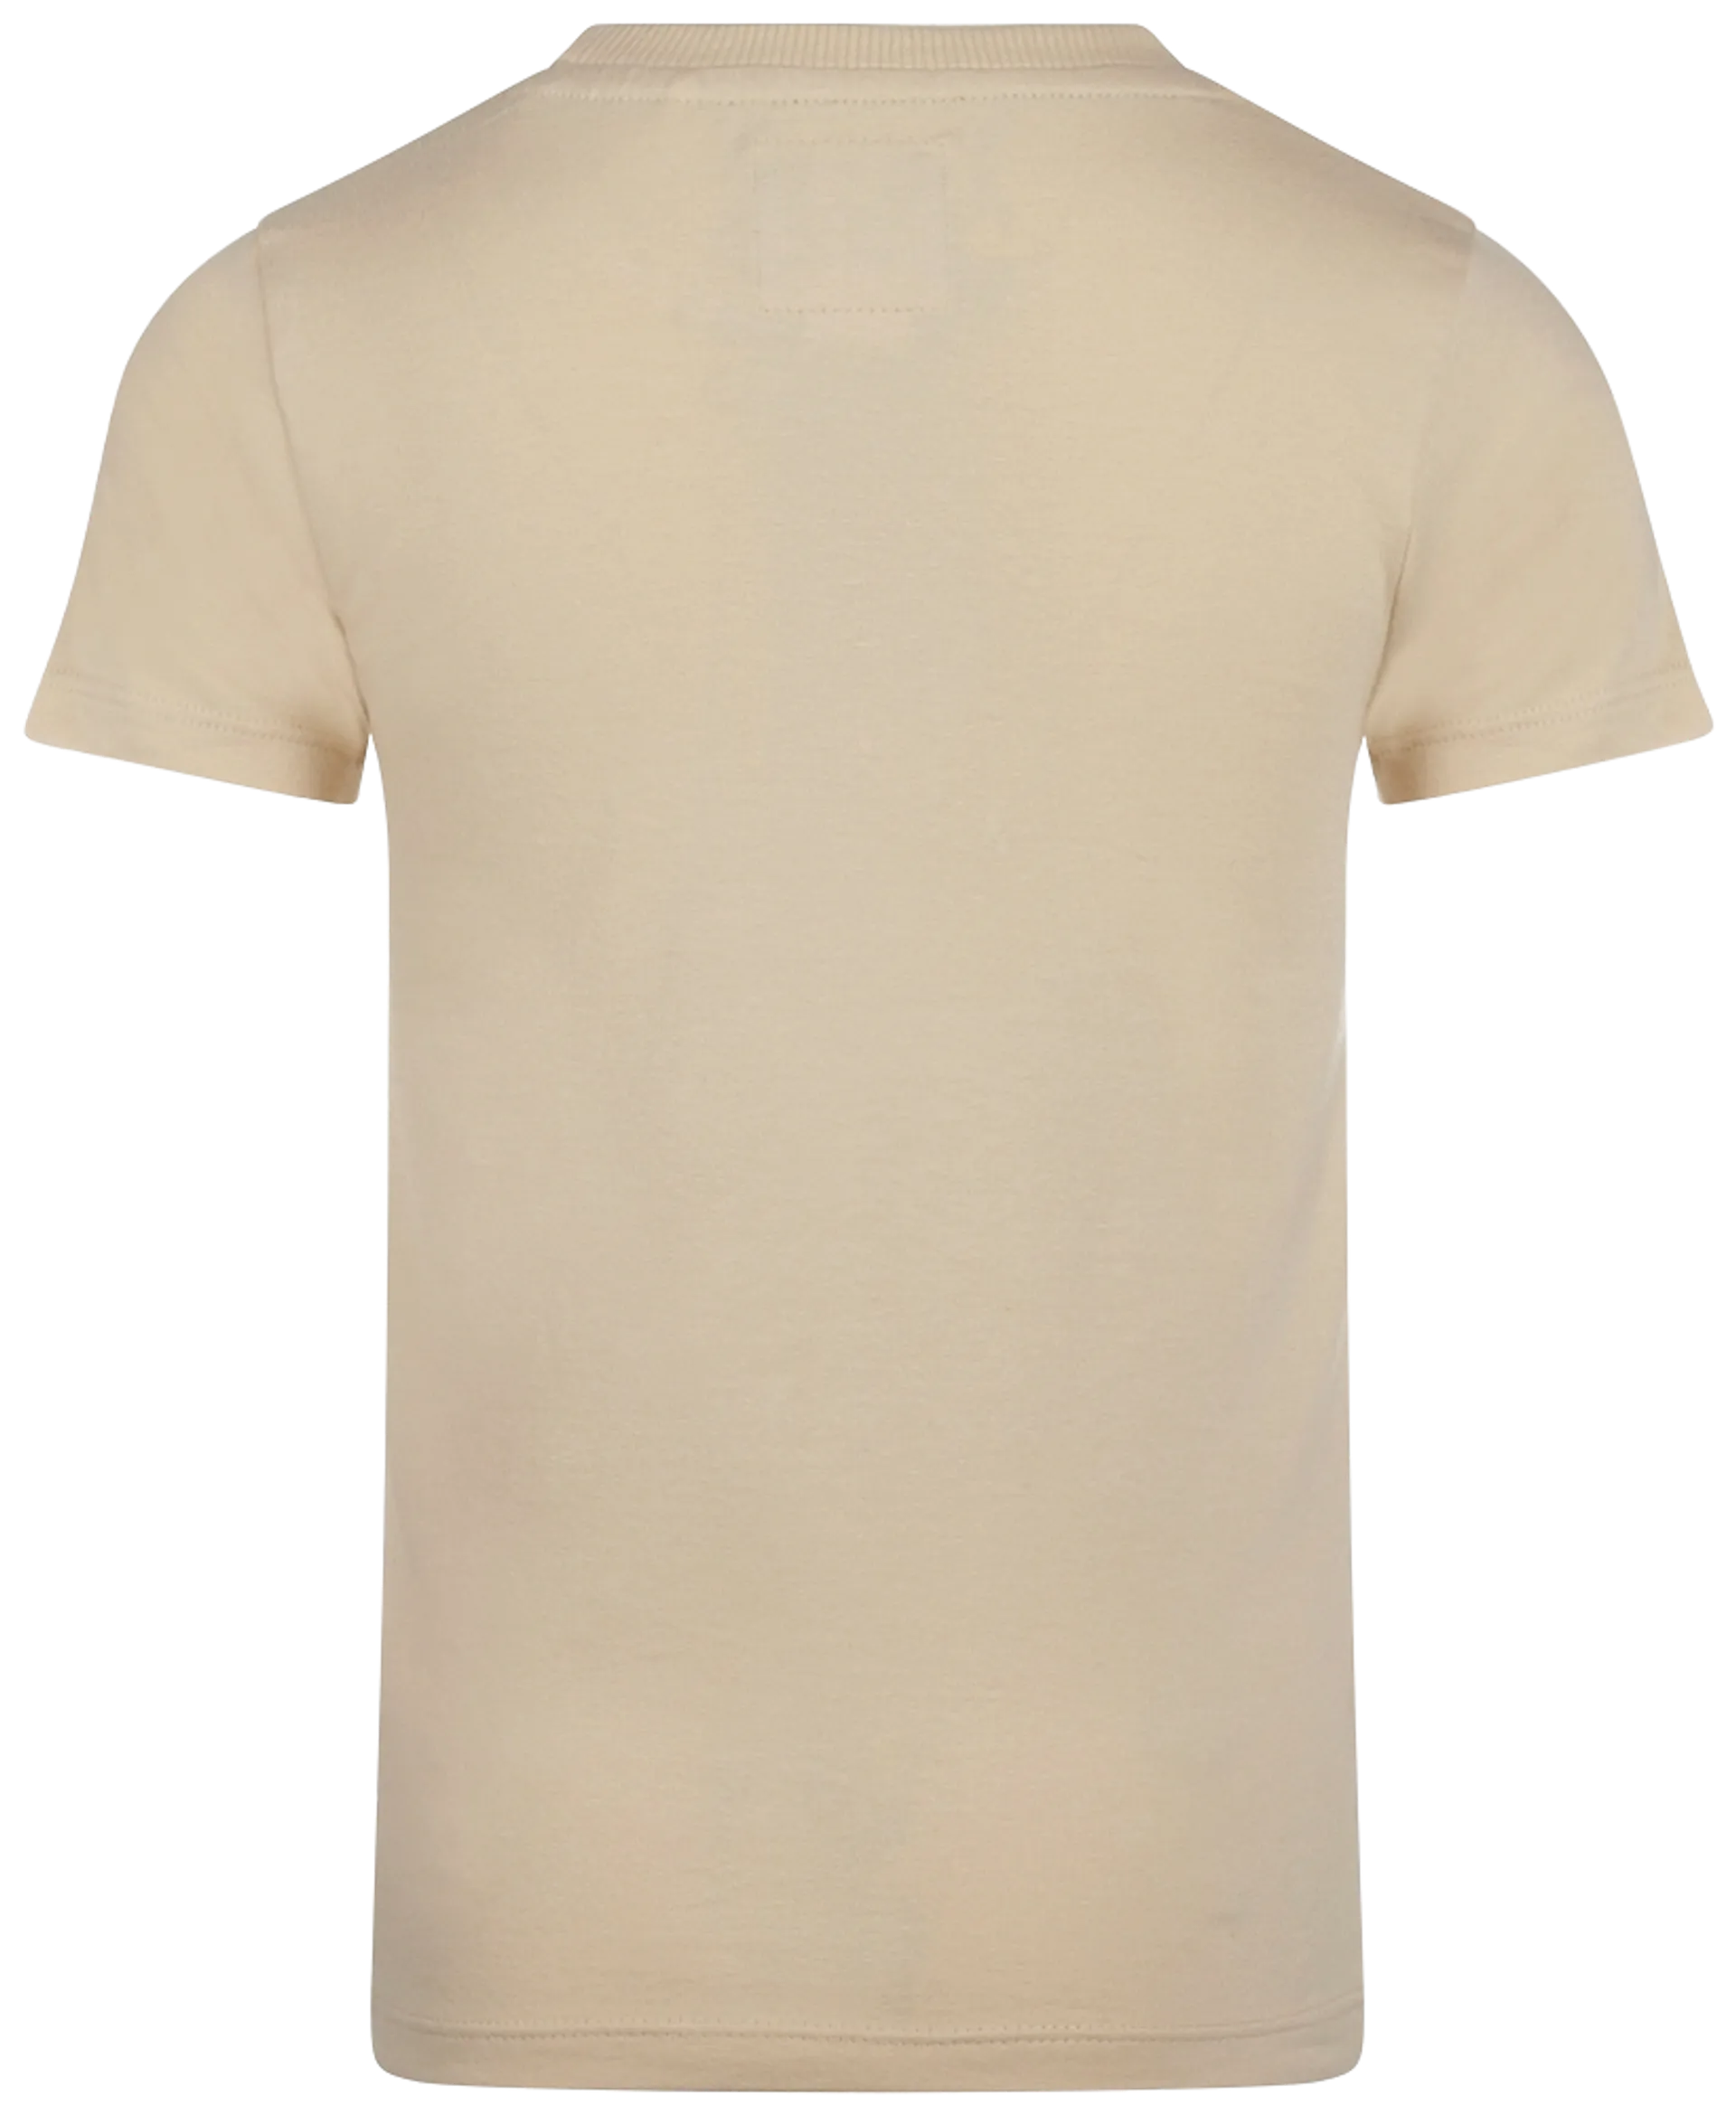 Kokonoko lasten t-paita, jossa on painokuviointi edessä R50874 - offwhite - 2